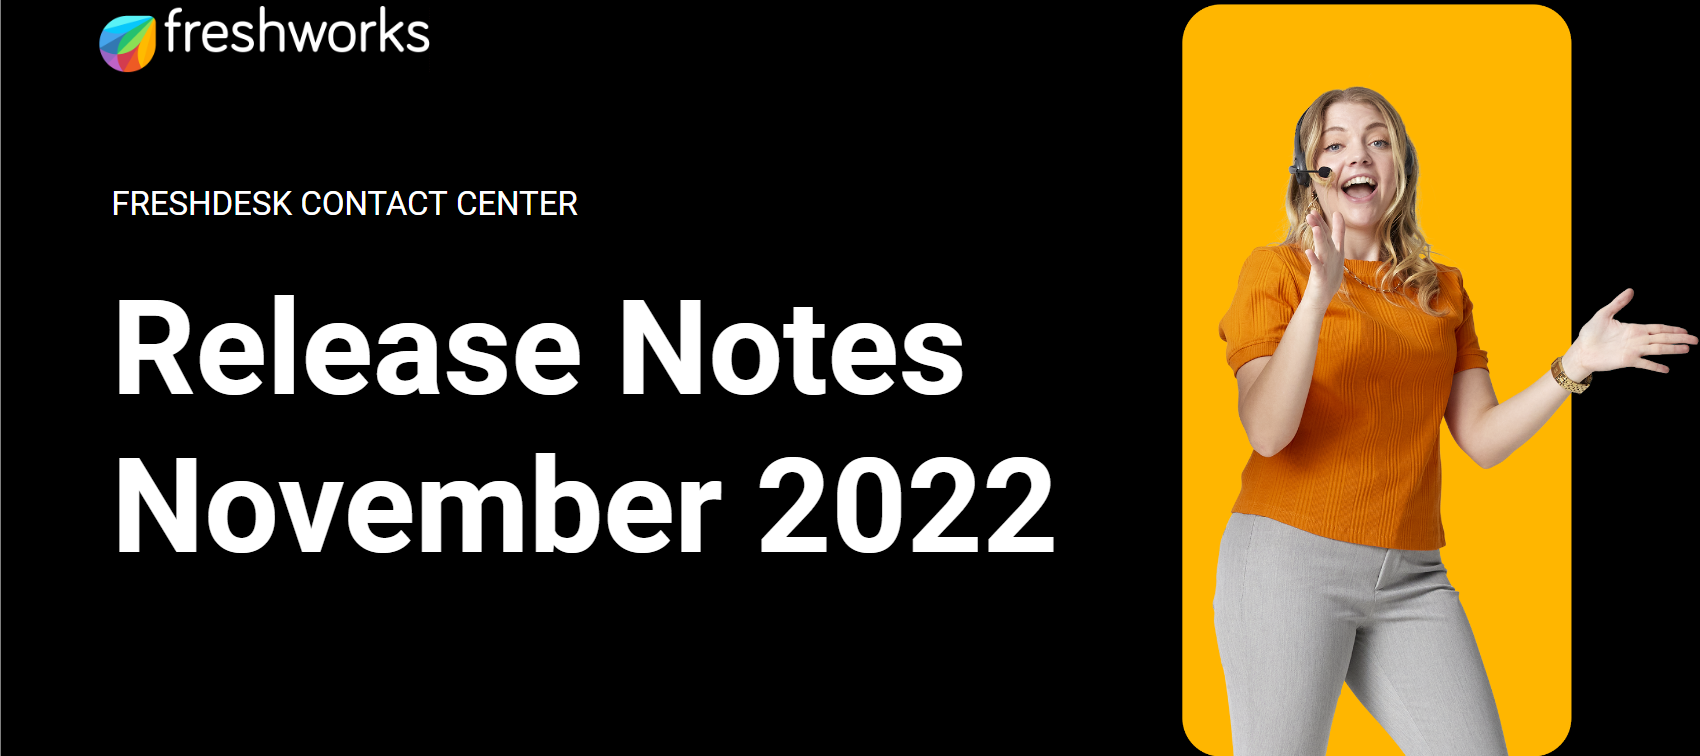 Freshdesk Contact Center Release Notes - November 2022